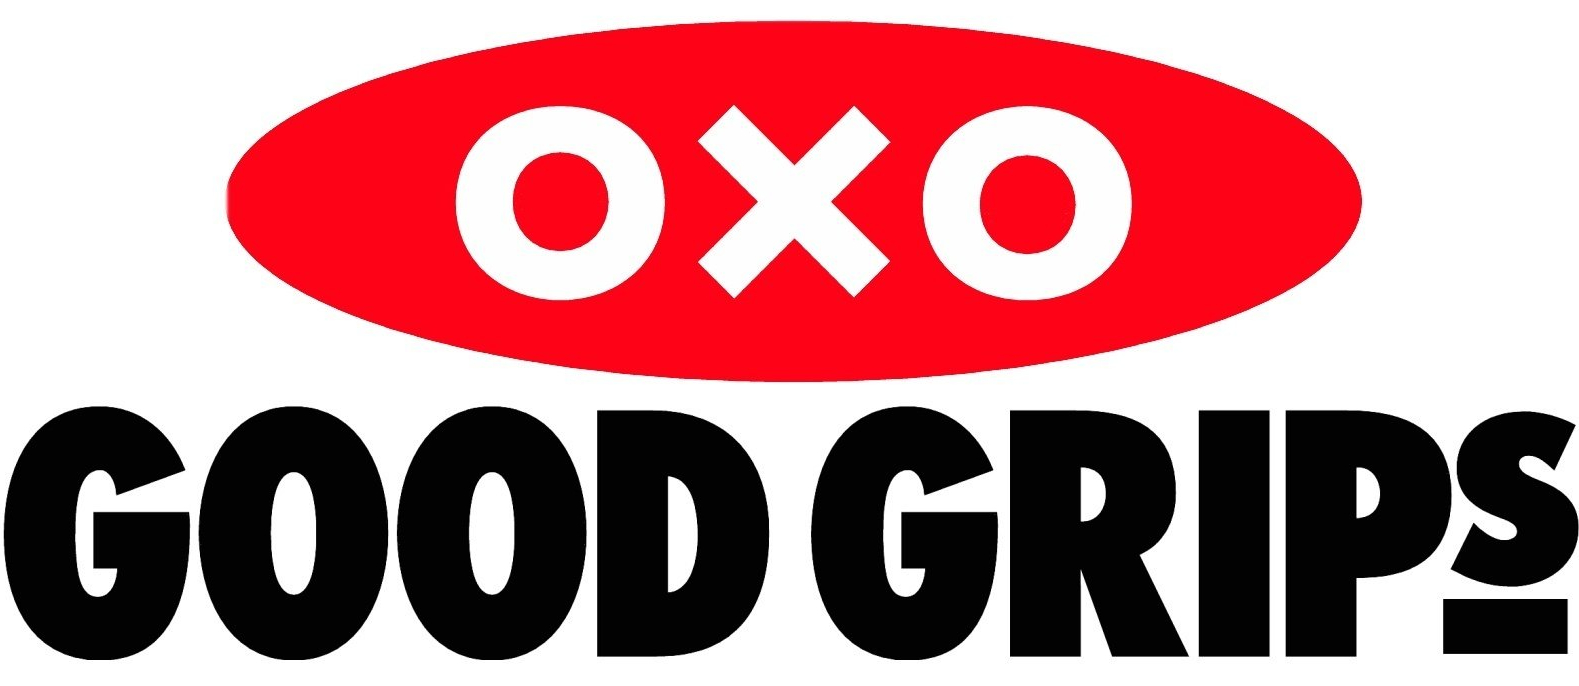 oxo goodgrips verzwaarde eetlepel